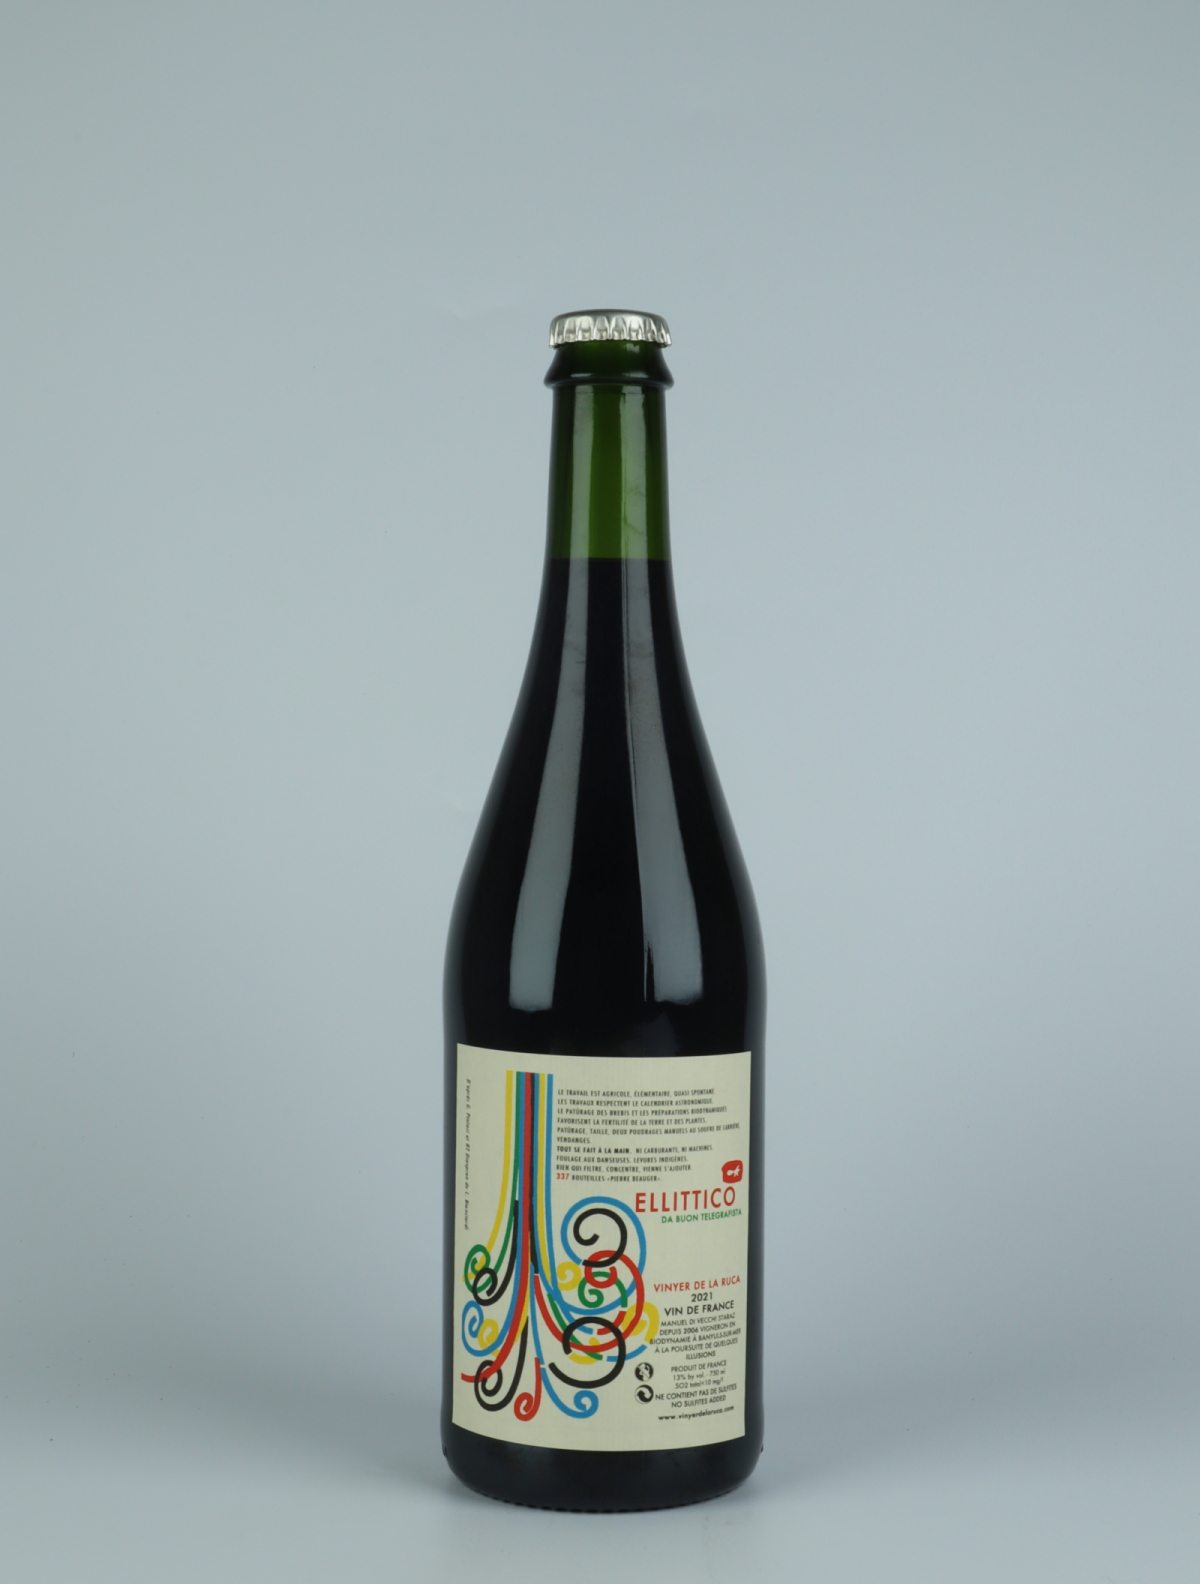 En flaske 2021 Ellittico Rødvin fra Vinyer de la Ruca, Rousillon i Frankrig